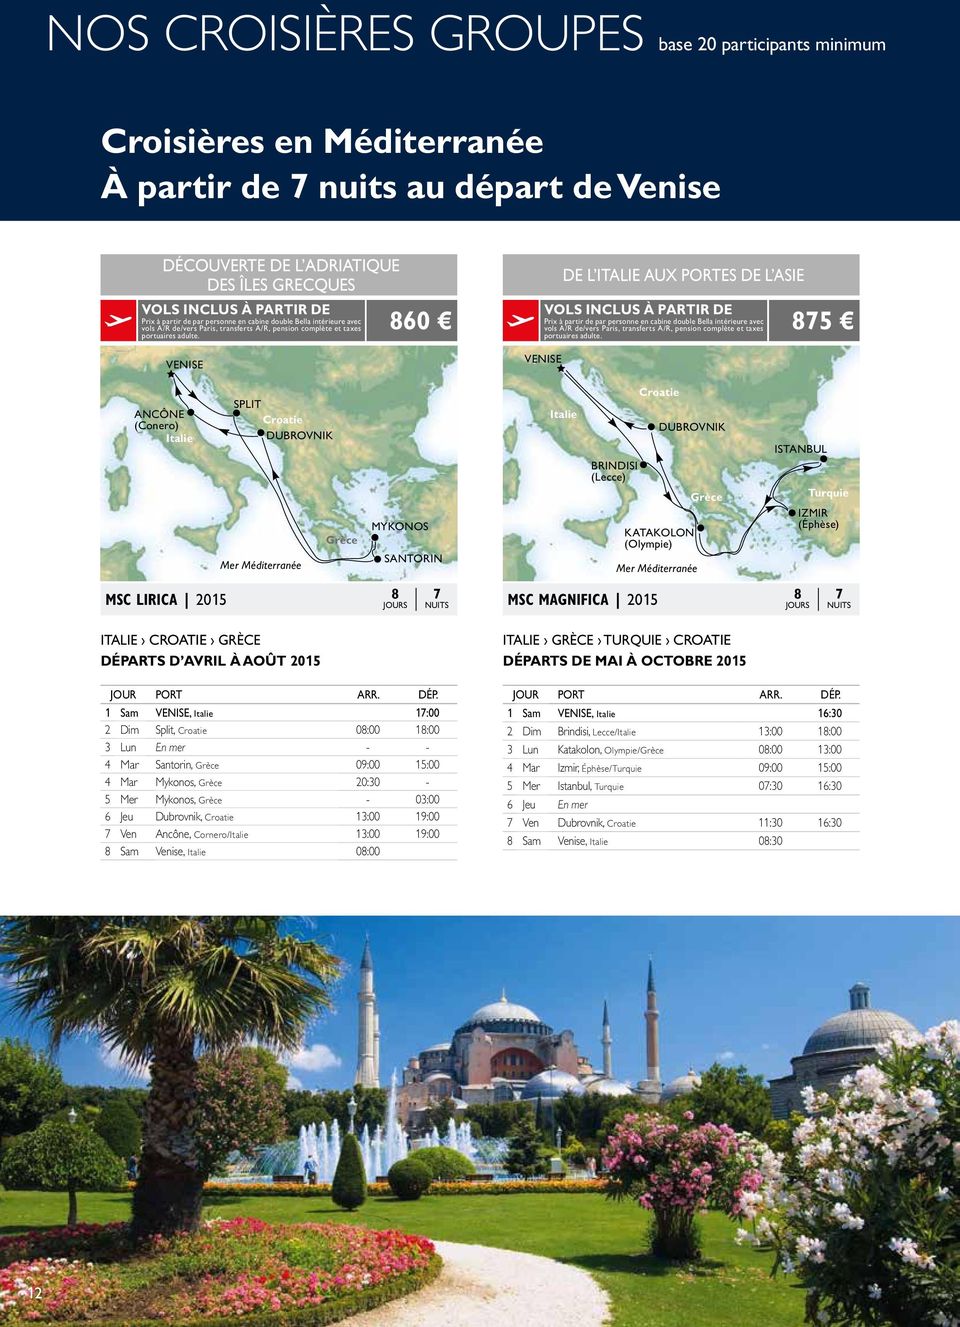 VENISE ANCÔNE (Conero) Italie SPLIT Croatie DUBROVNIK Mer Méditerranée Italie Croatie GRÈCE DÉPA